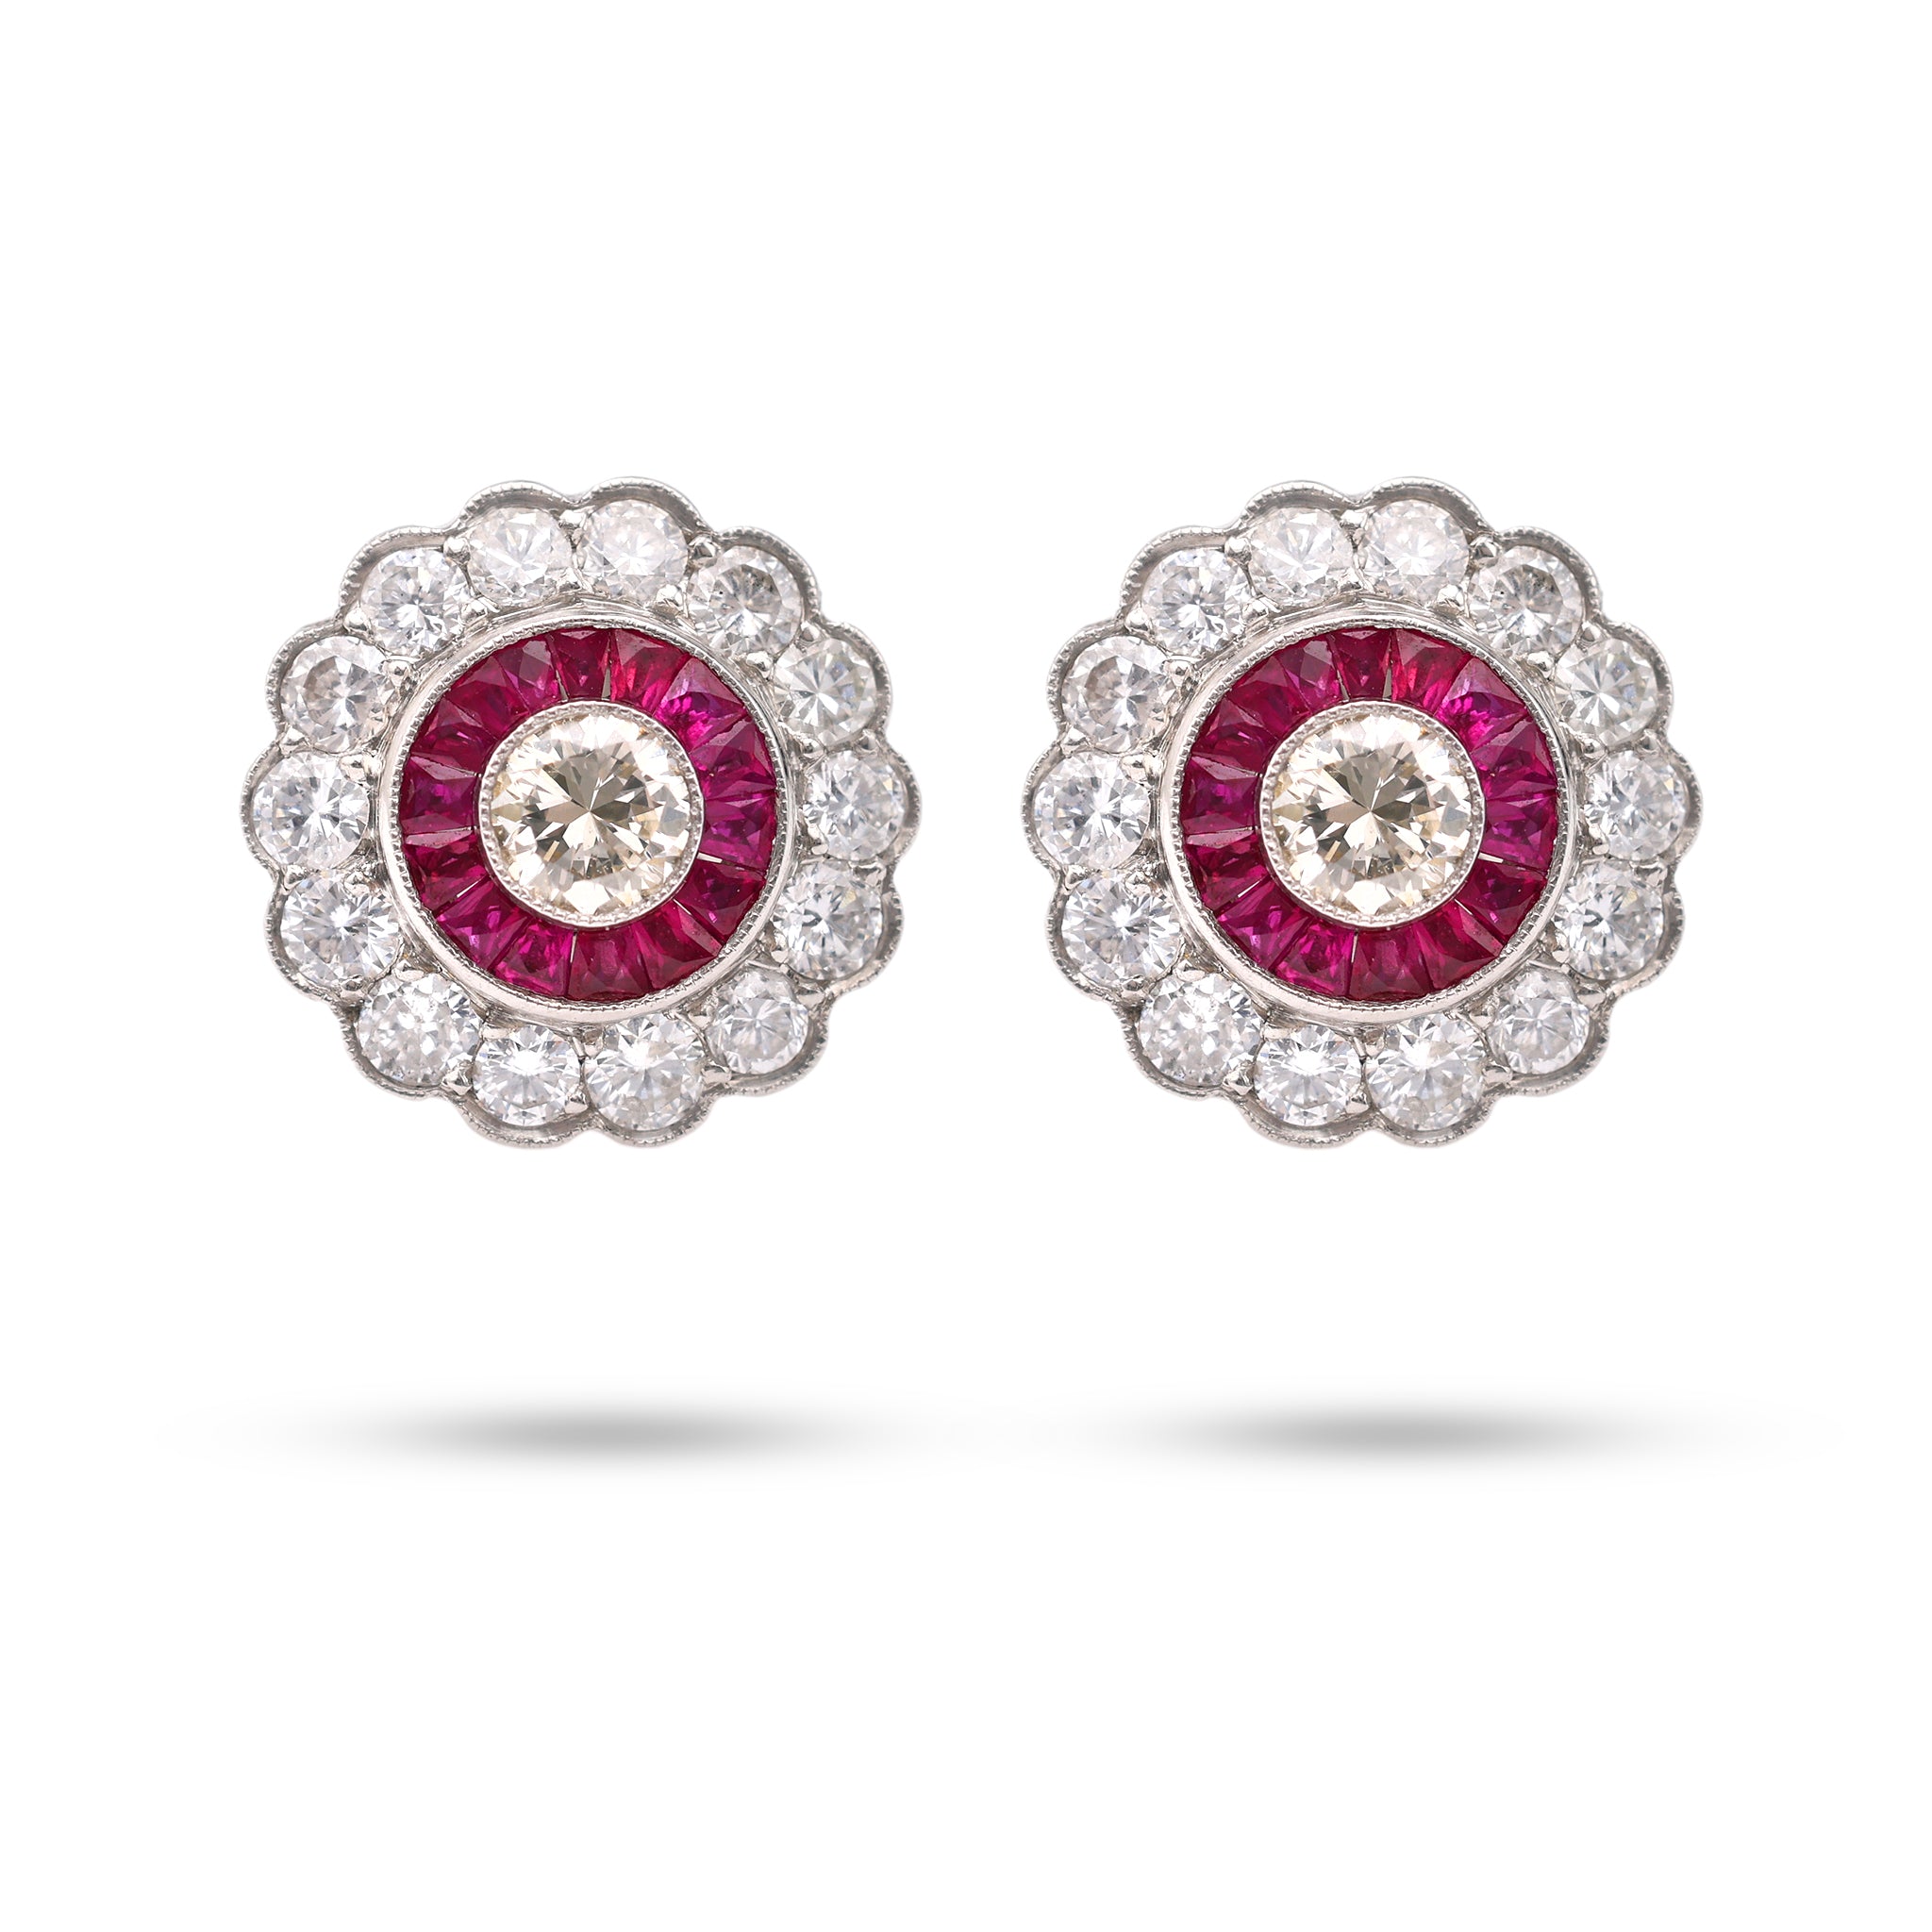 Art Deco Inspired Diamond Ruby Platinum Target Earrings Earrings Jack Weir & Sons   